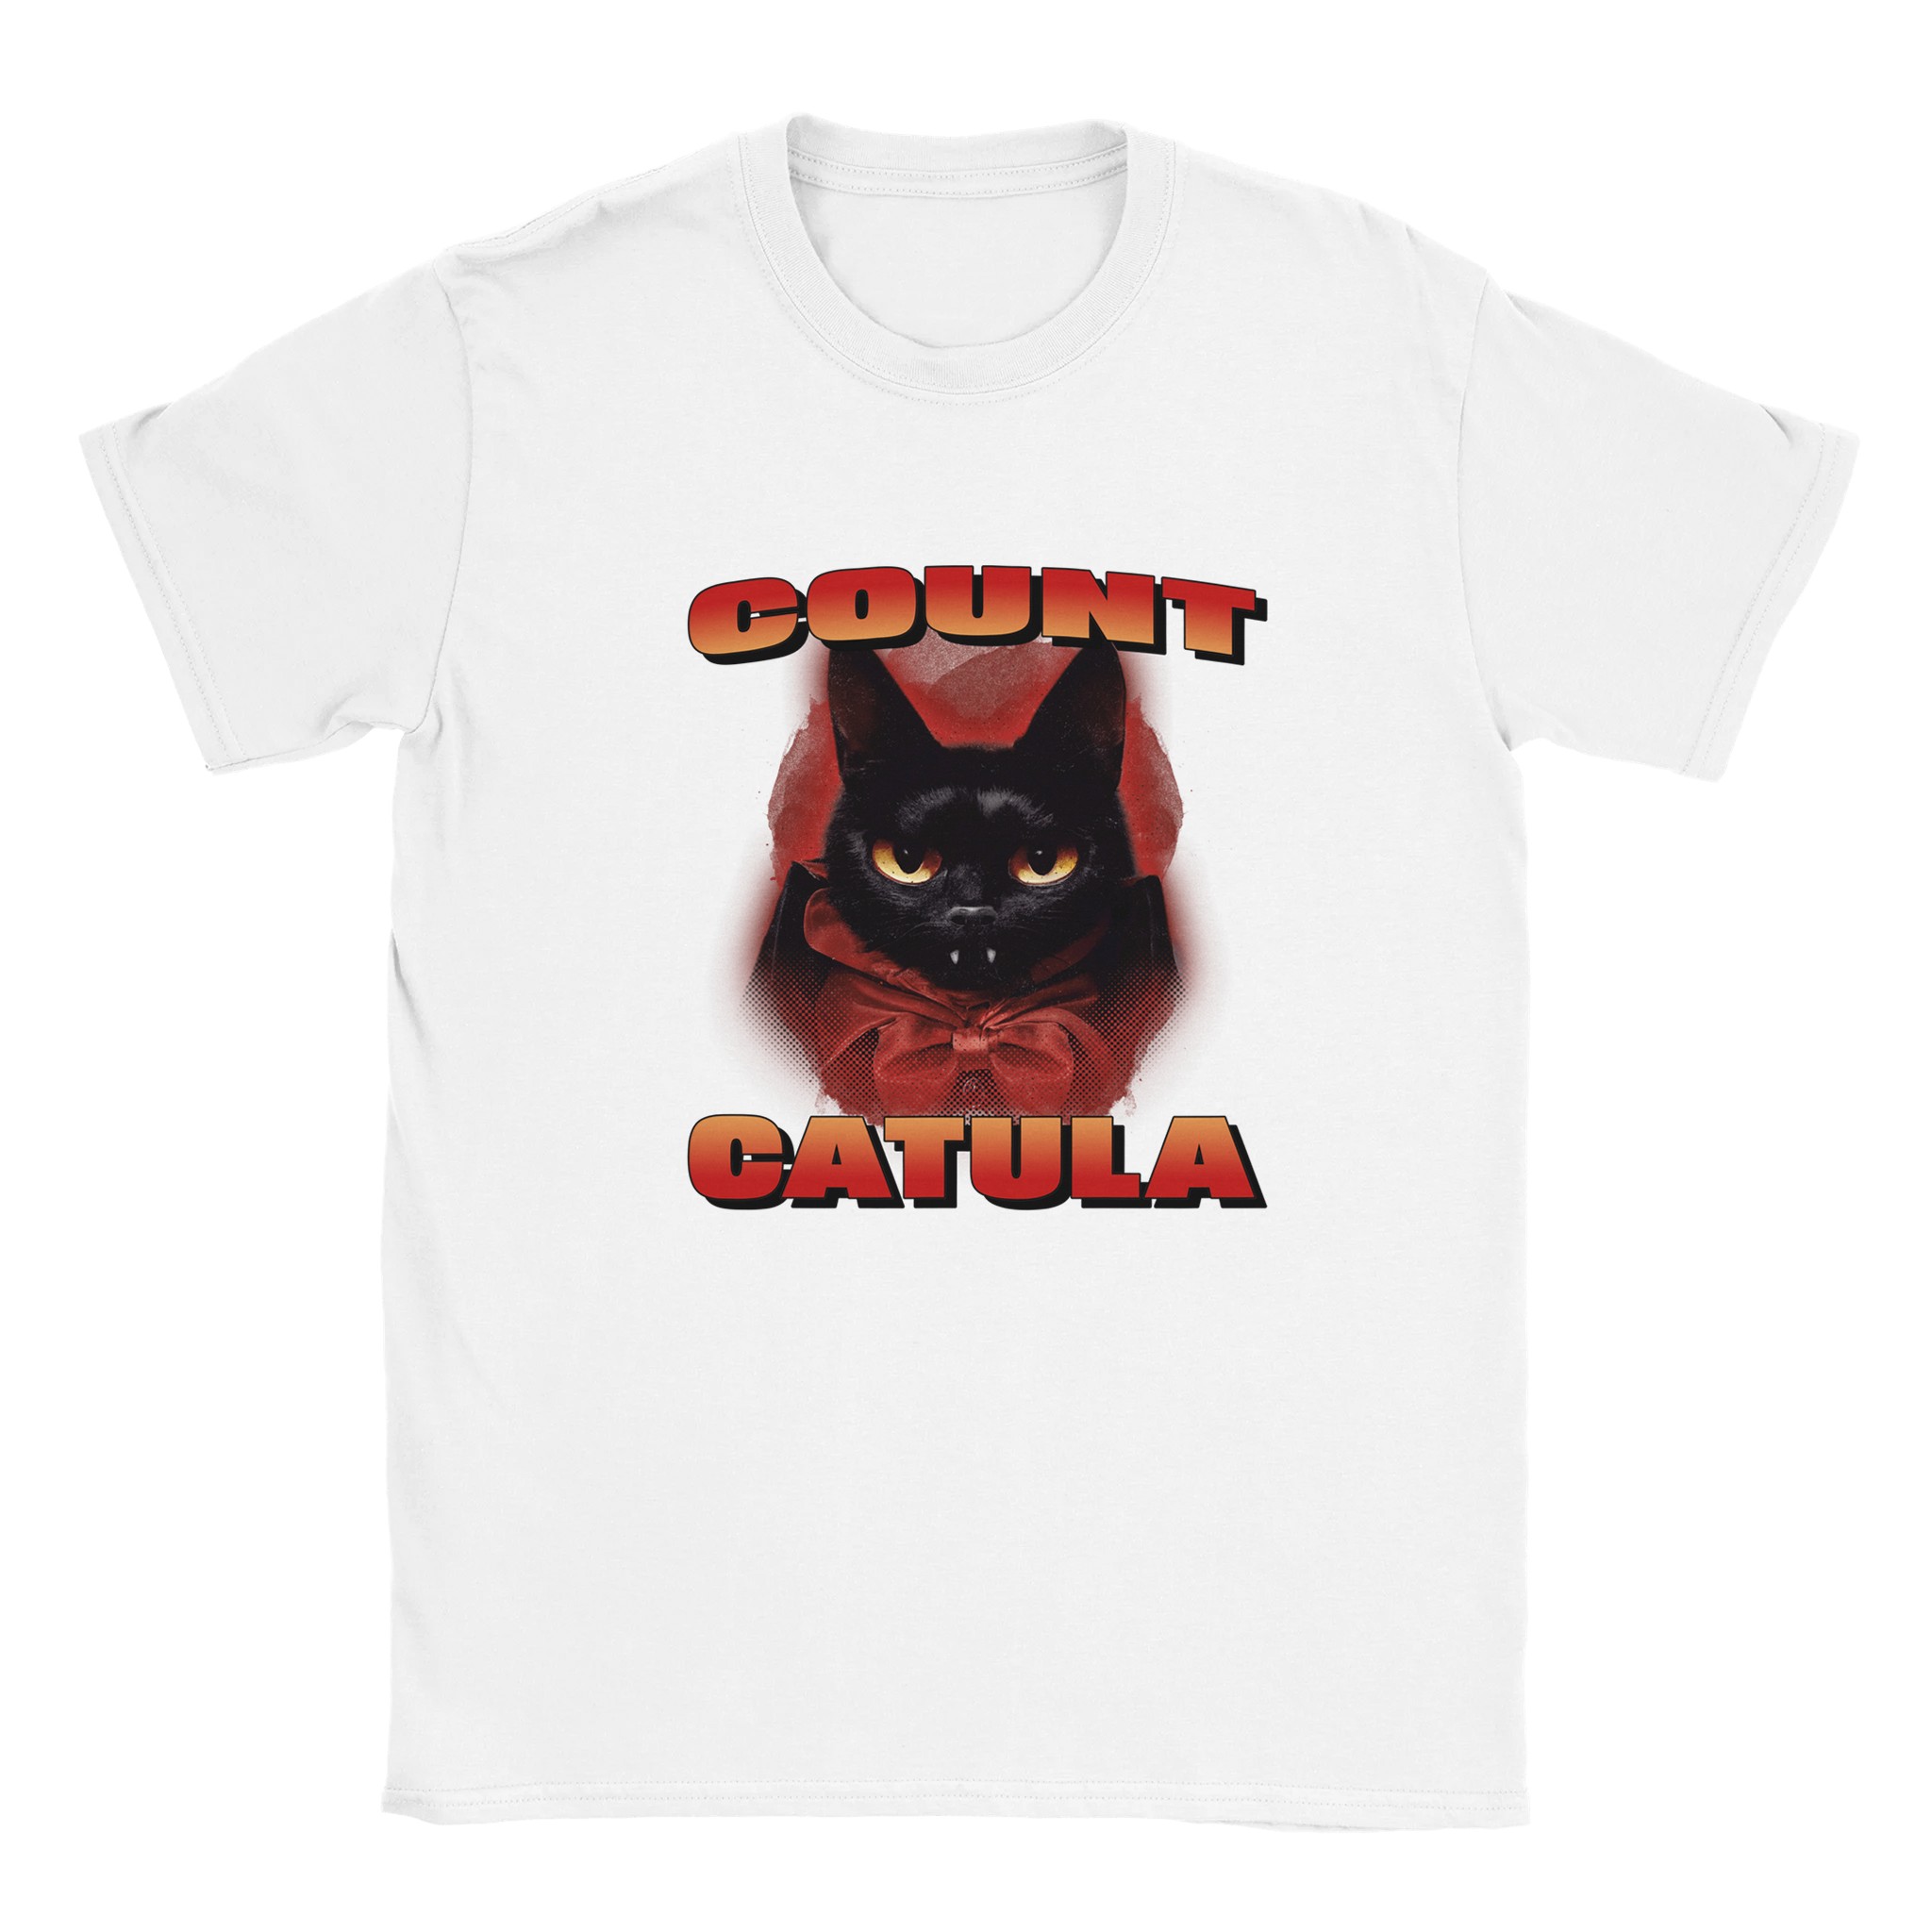 Count catula